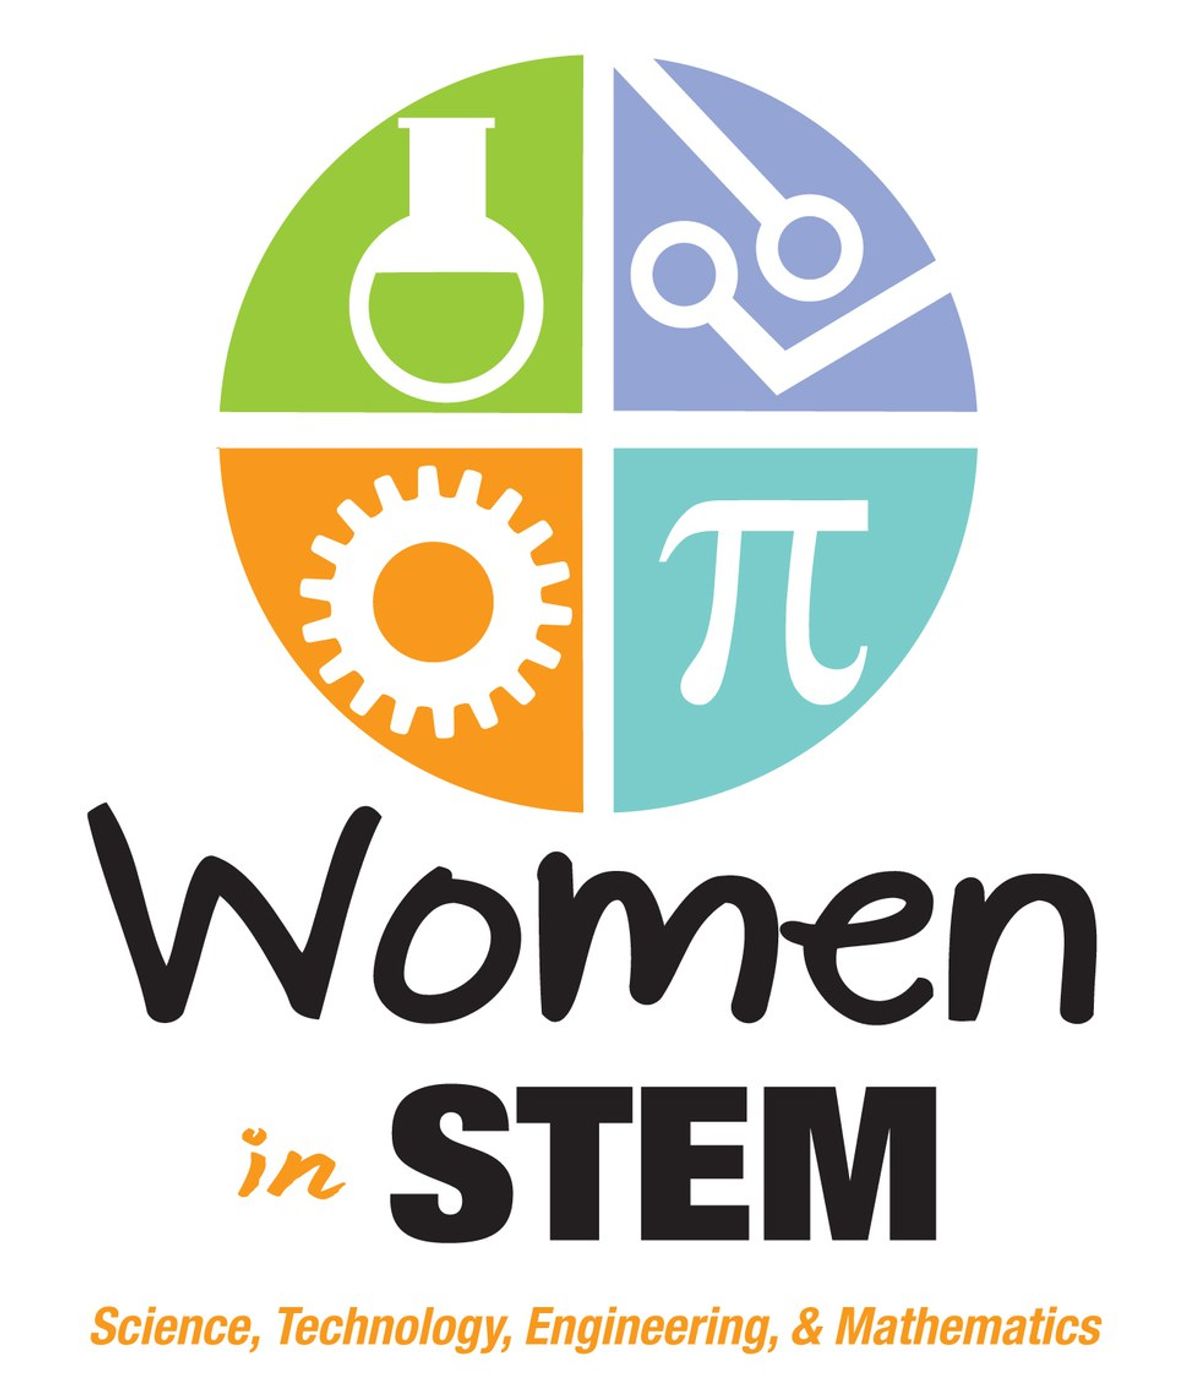 The Importance Of Women In STEM Fields